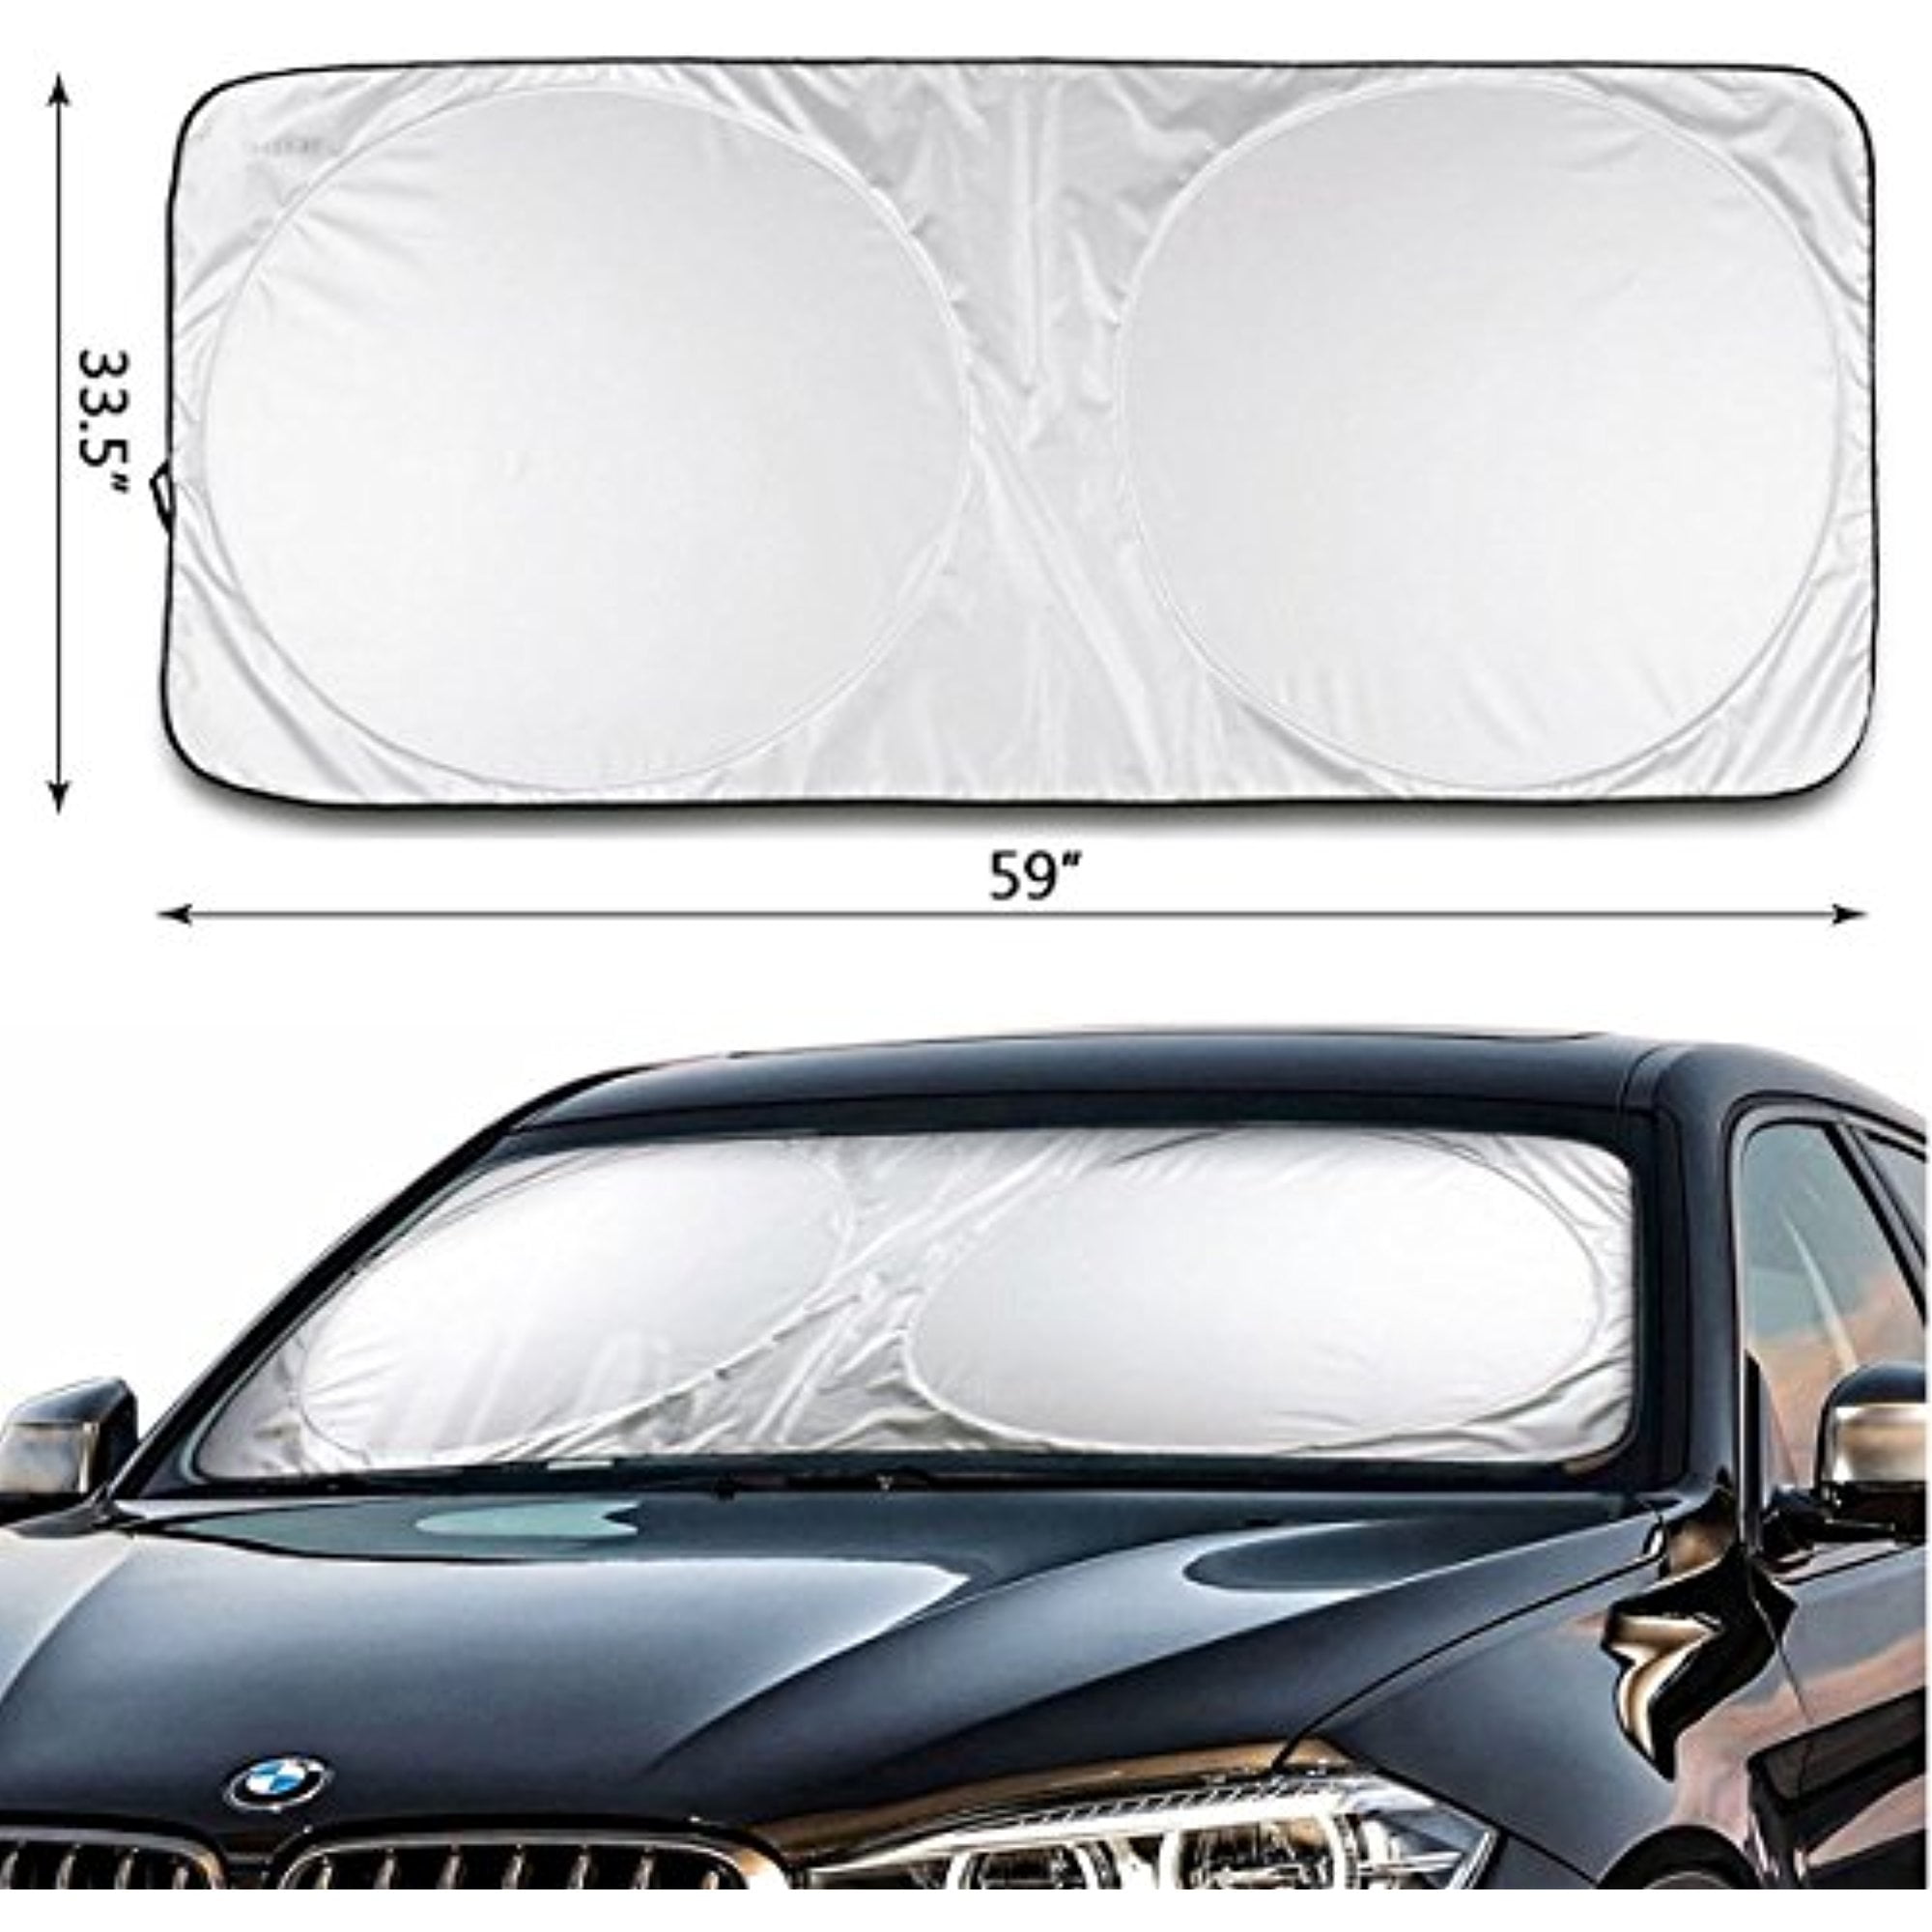 sun shield for car windshield